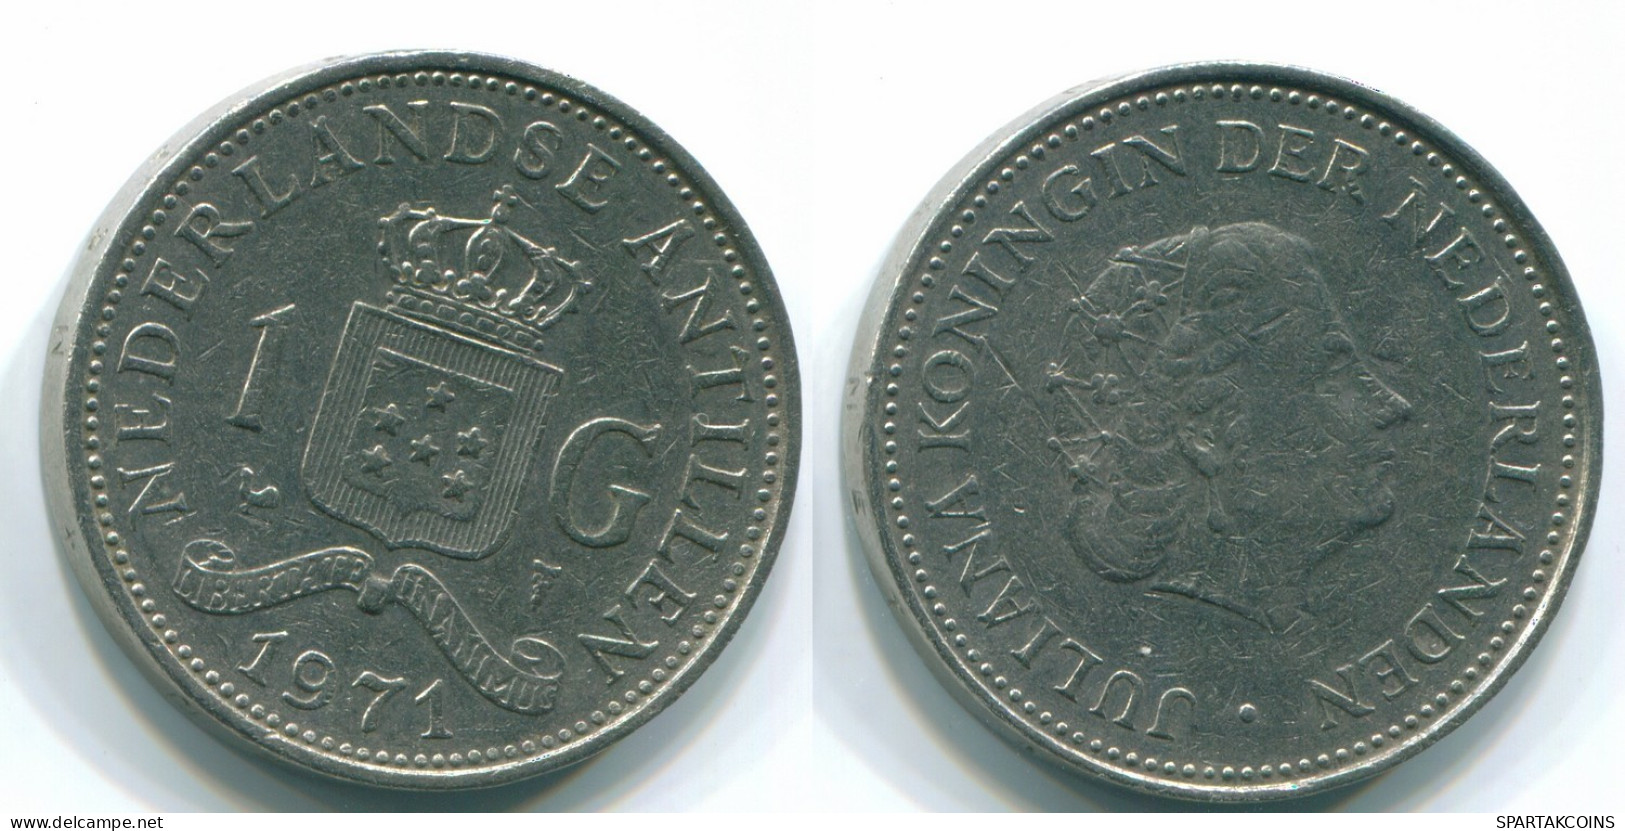 1 GULDEN 1971 NETHERLANDS ANTILLES Nickel Colonial Coin #S12016.U.A - Niederländische Antillen